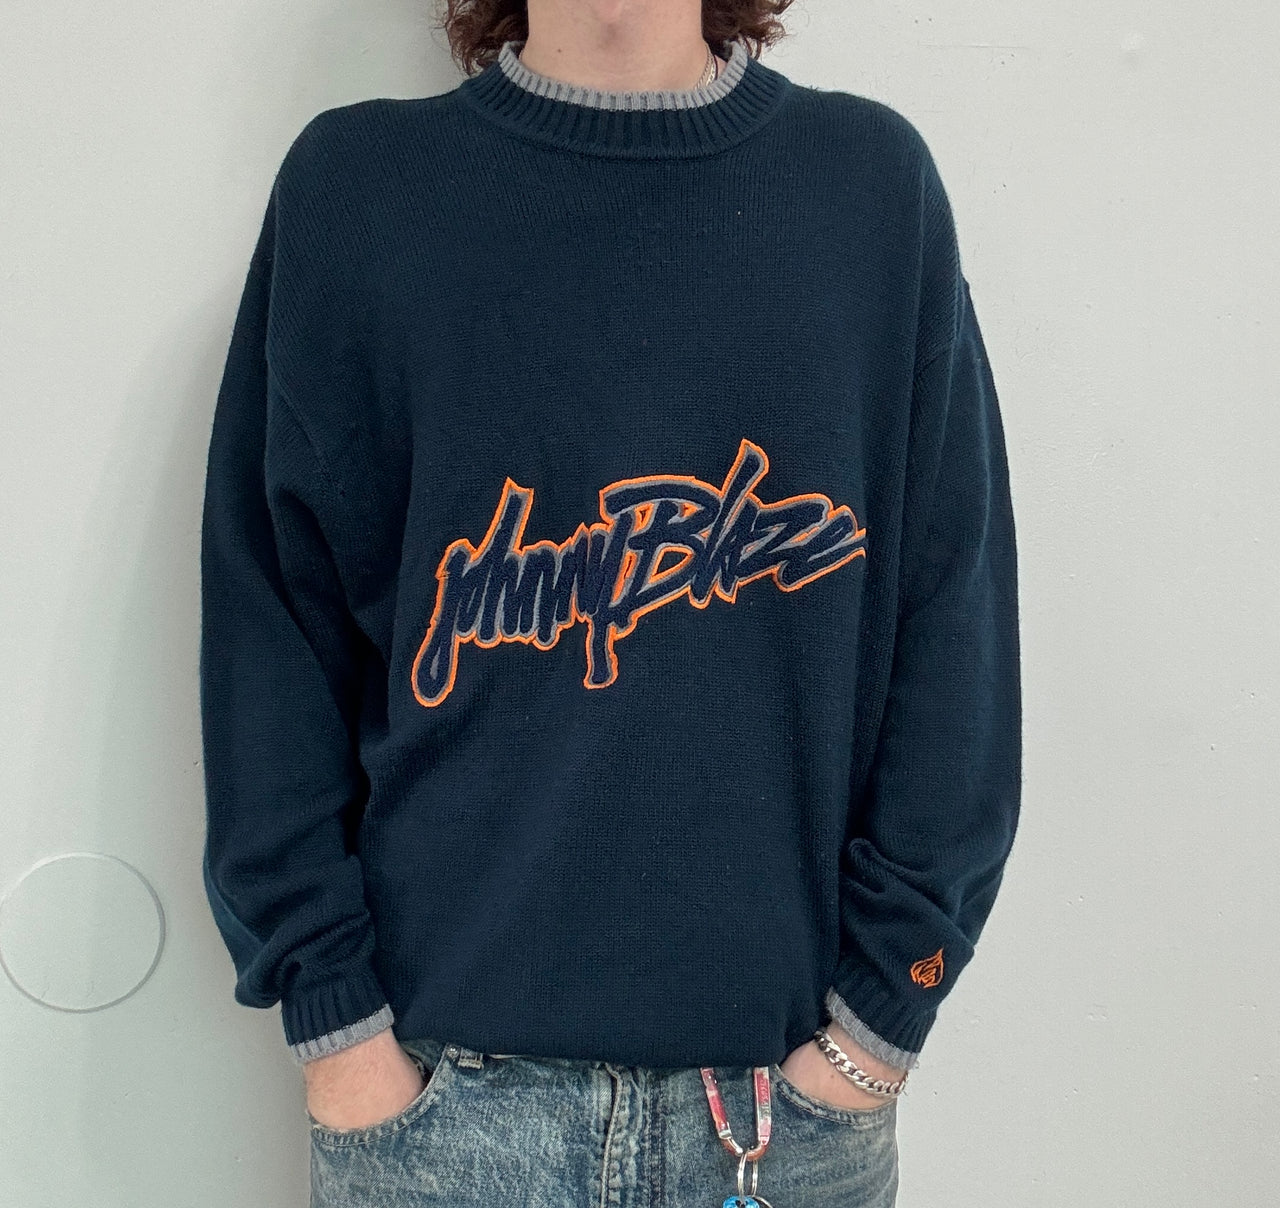 90s Johnny Blaze Knit Sweater